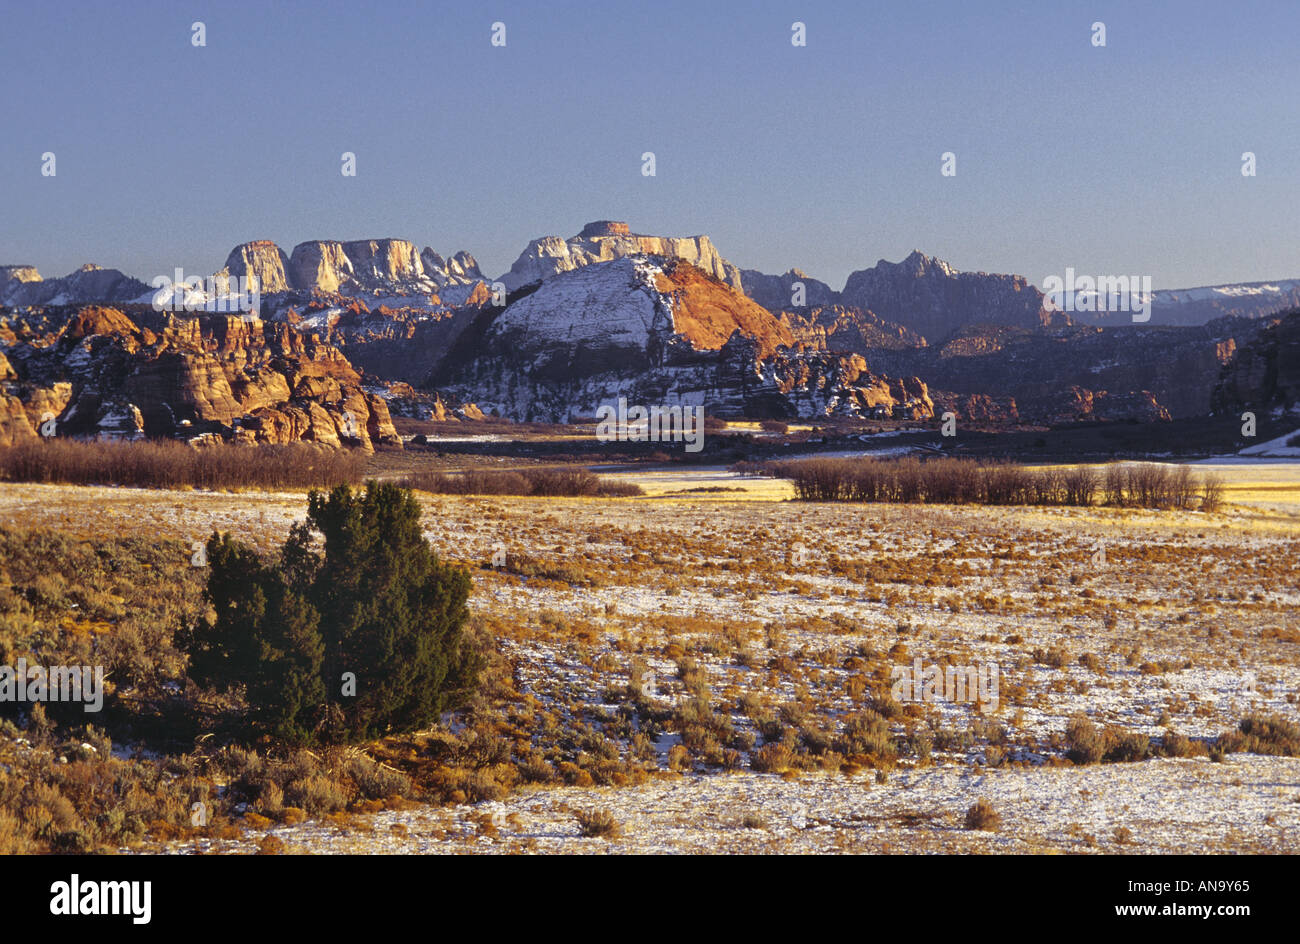 Kolob inférieur Plateau, le Temple de l'Ouest dans le district, hiver coucher de soleil, Zion National Park, Utah, USA Banque D'Images